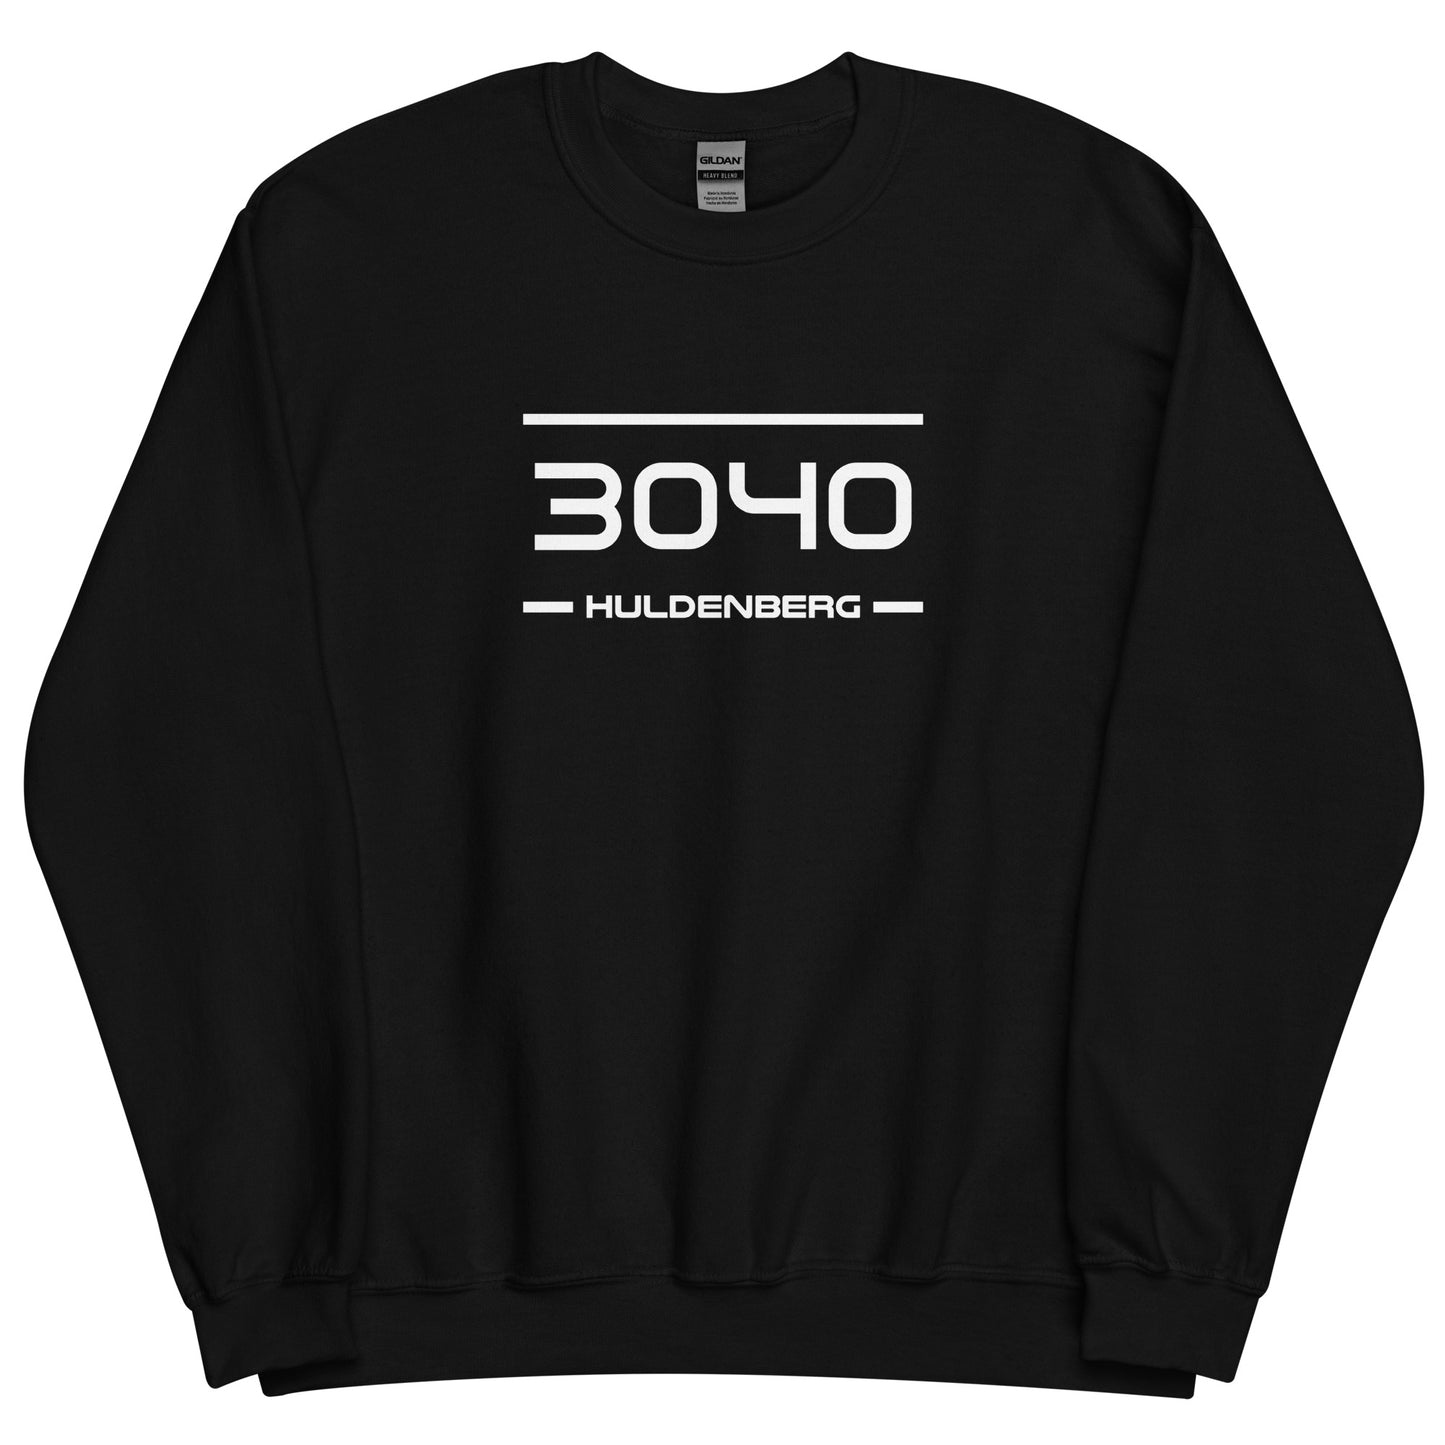 Sweater - 3040 - Huldenberg (M/V)